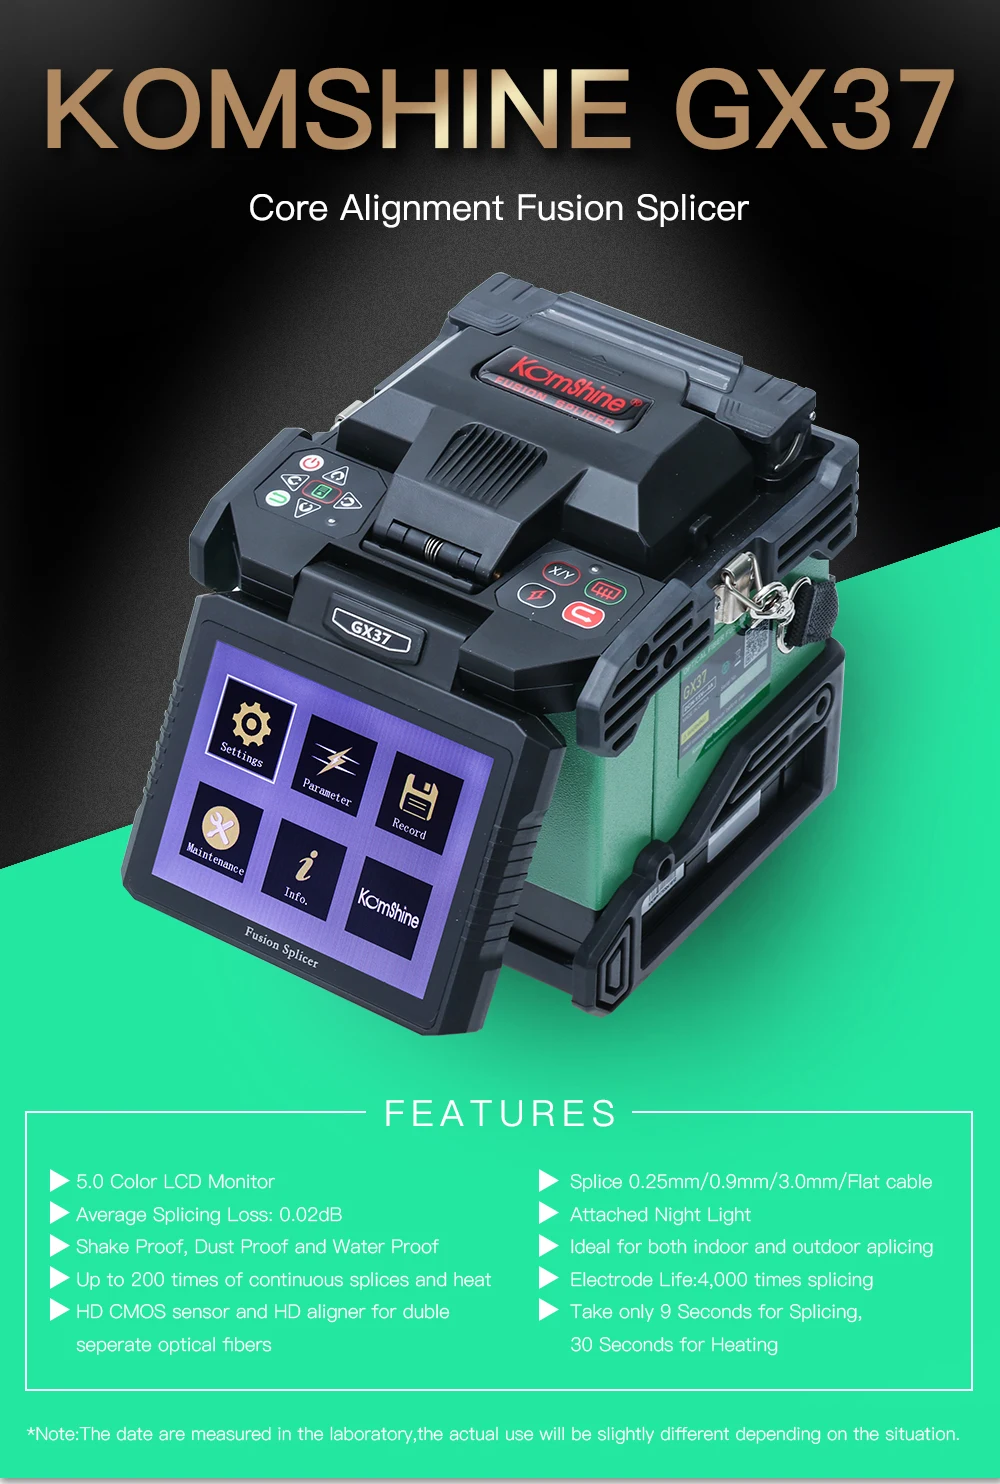 FTTH оптическое Сращивание машина Komshine GX37 производитель сварочный аппарат как Fujikura 70 s Splicer, INNO волокно сварщик